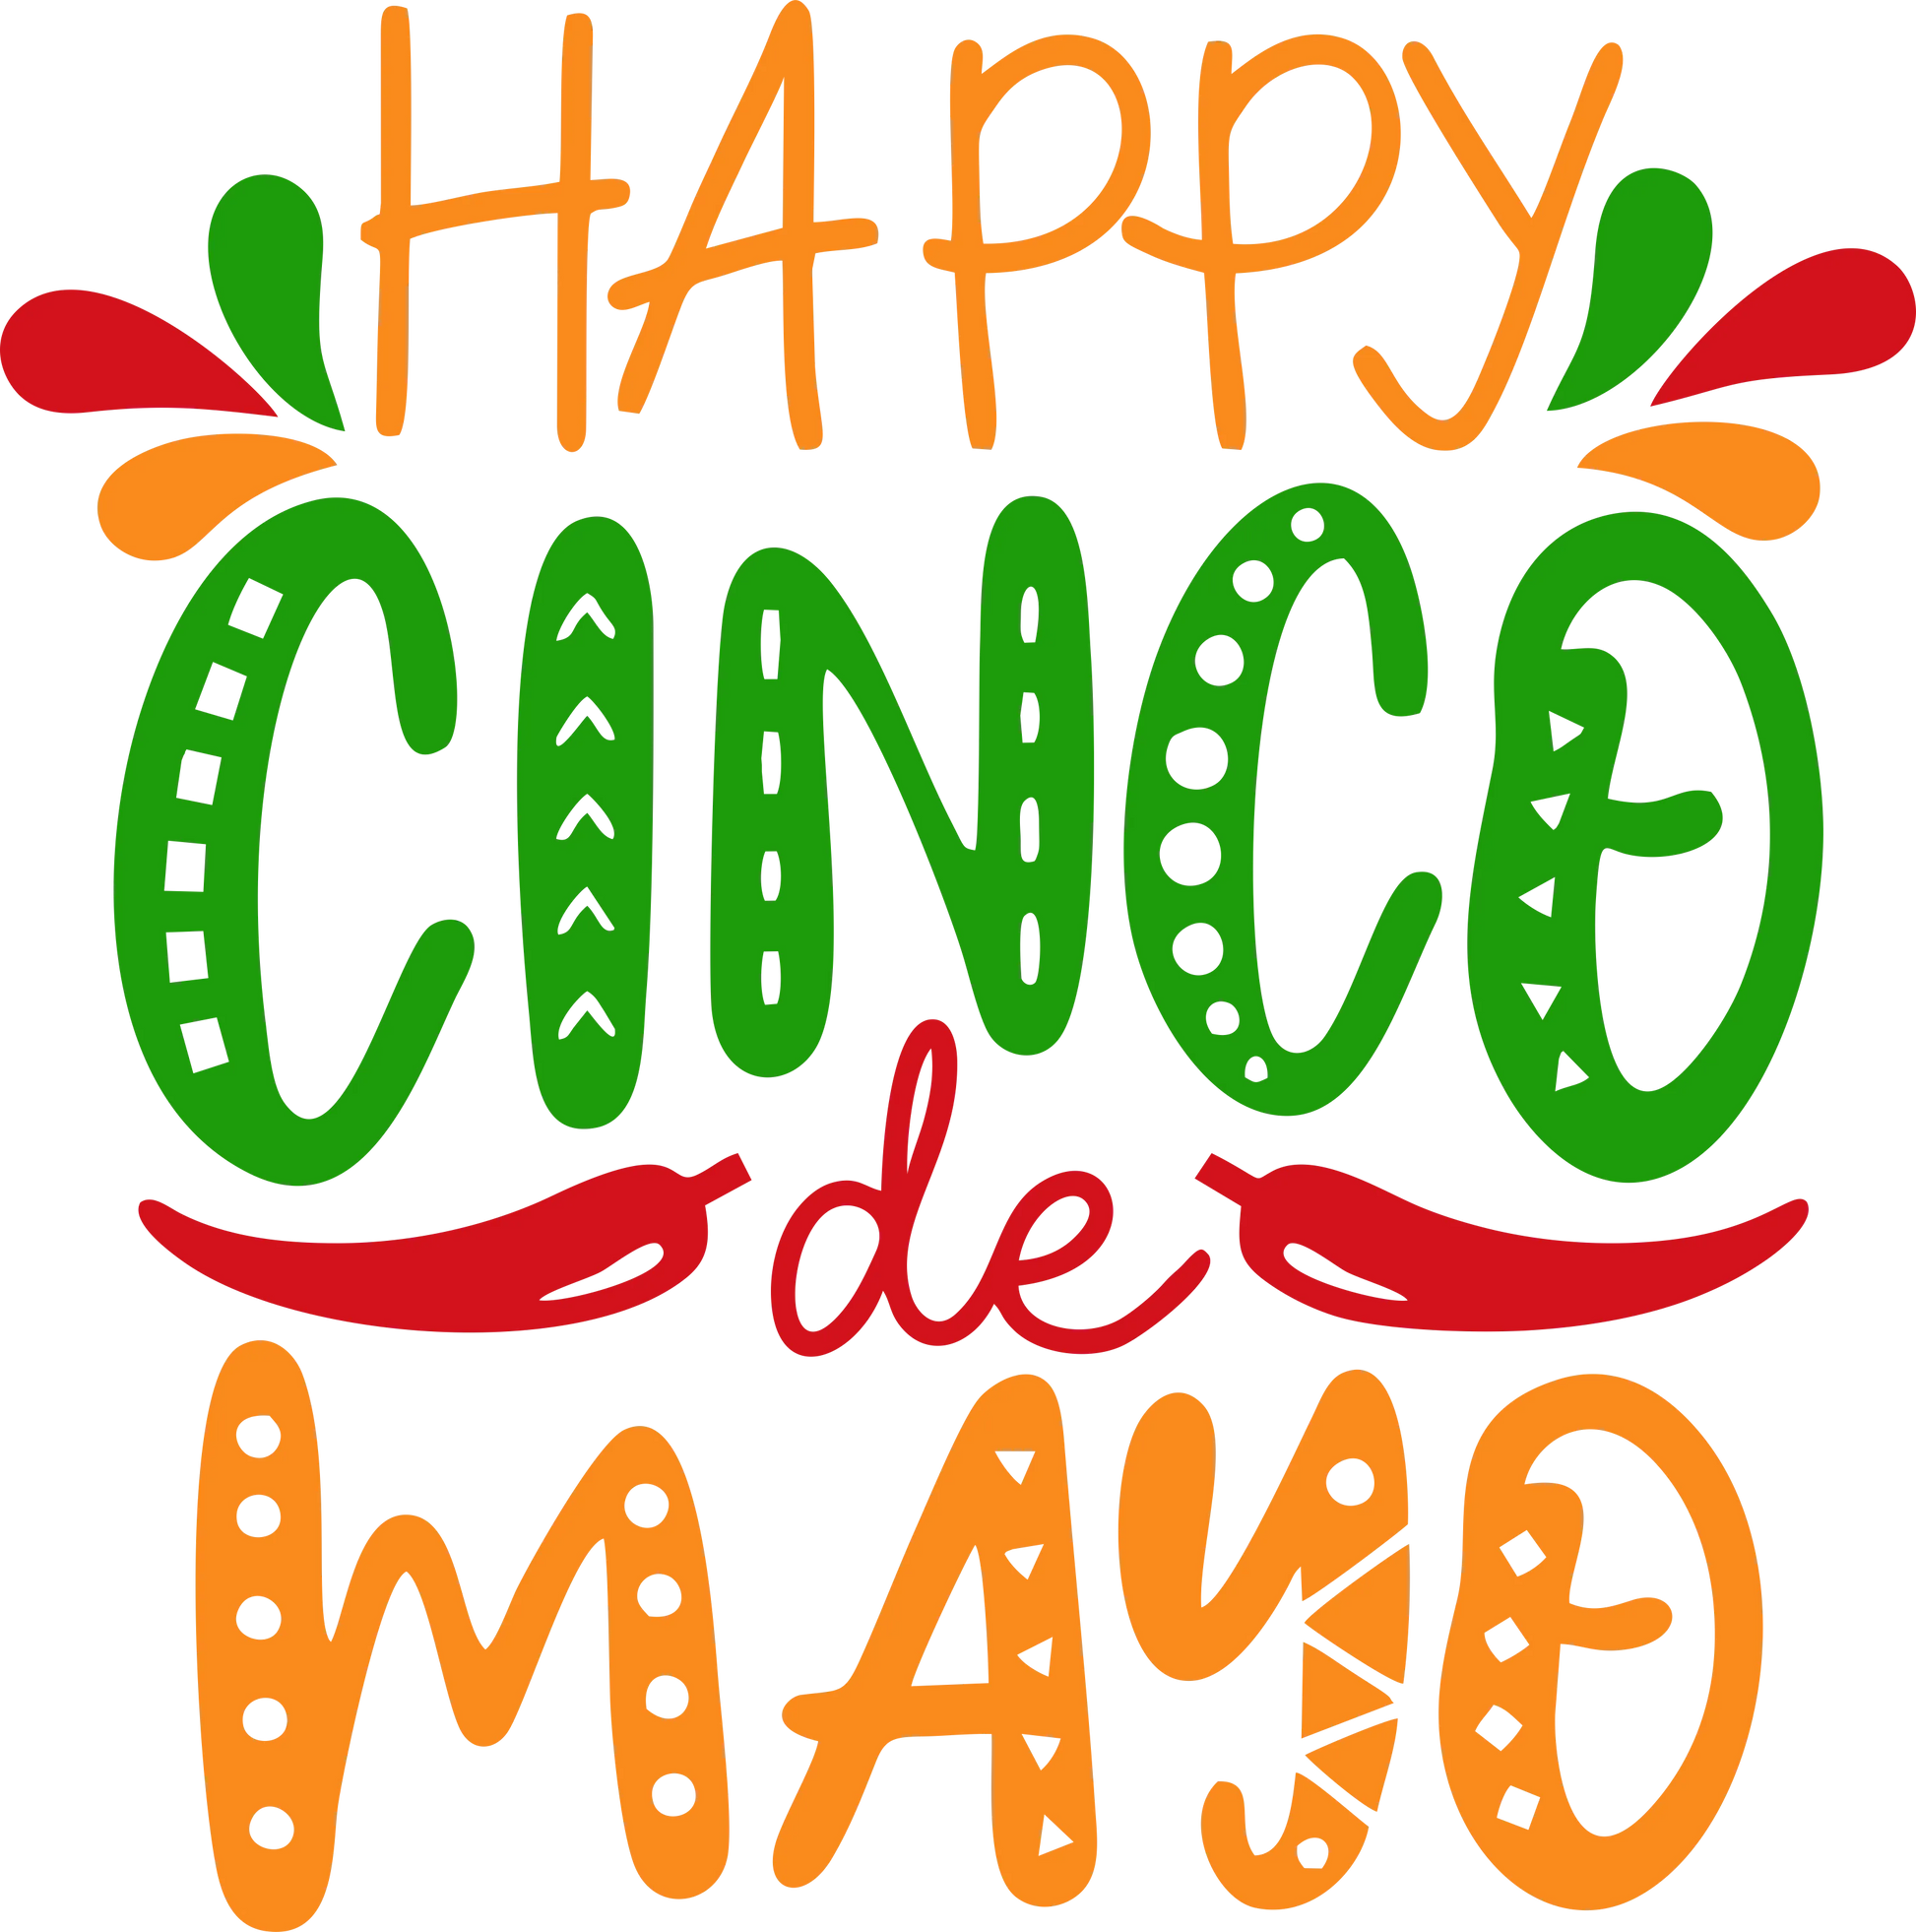 CDM8 - "Happy Cinco de Mayo" DTF Transfer, DTF Transfer, Apparel & Accessories, Ace DTF